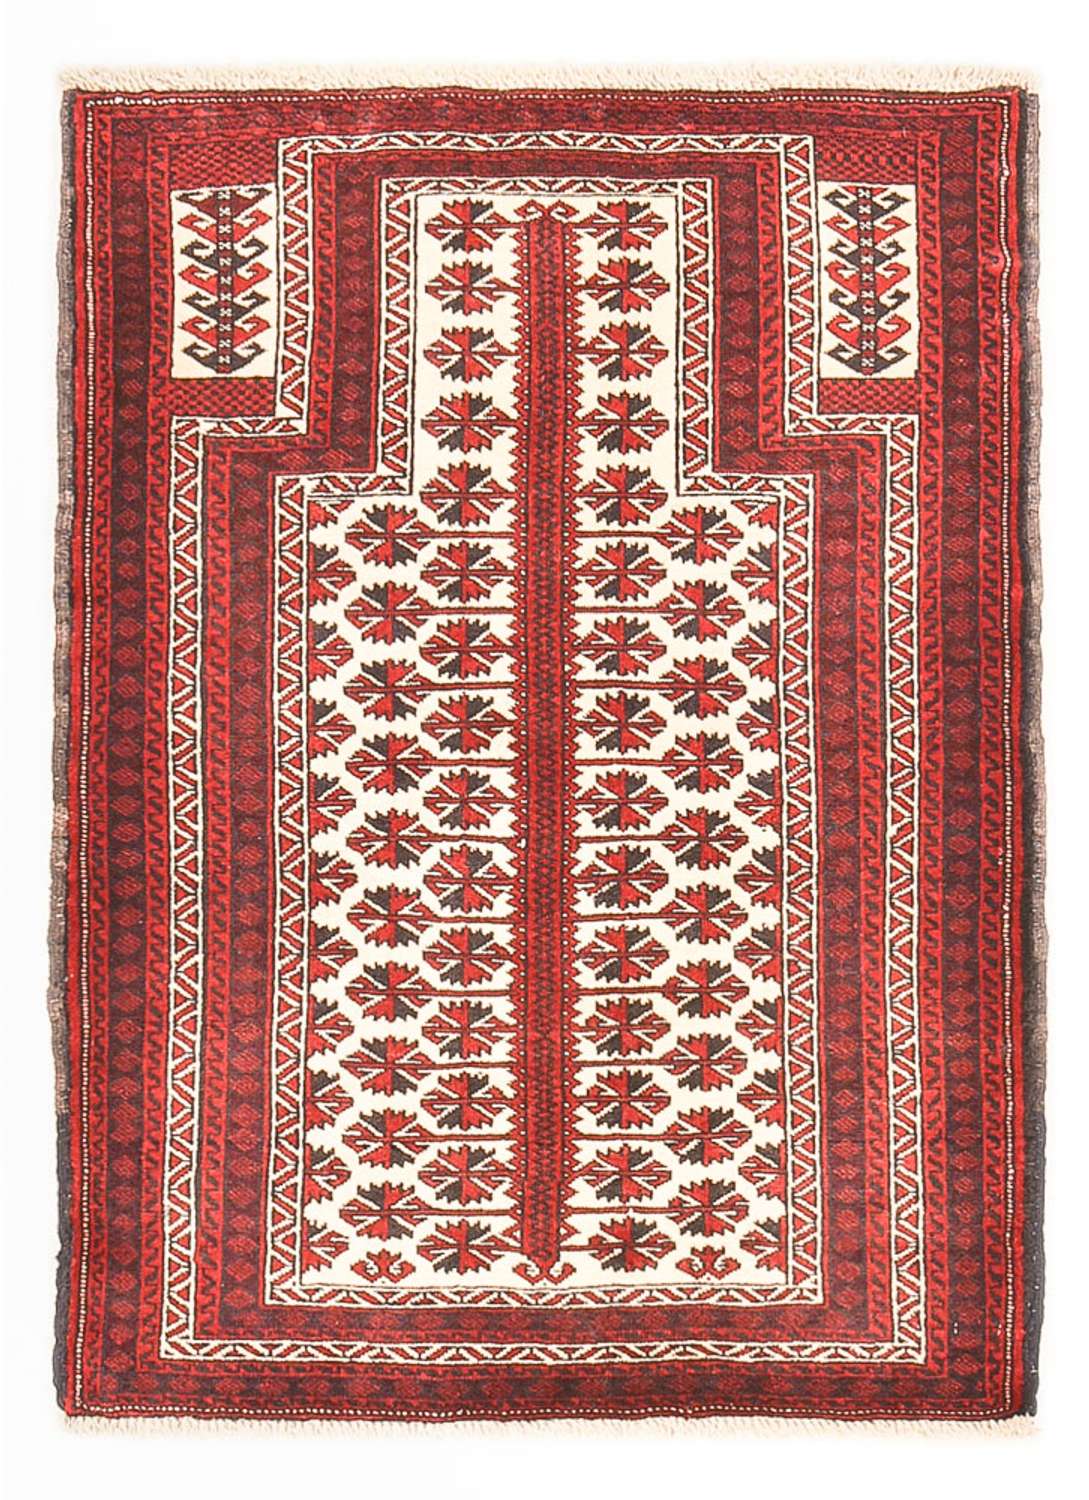 Tapis Belutsch - 137 x 100 cm - multicolore